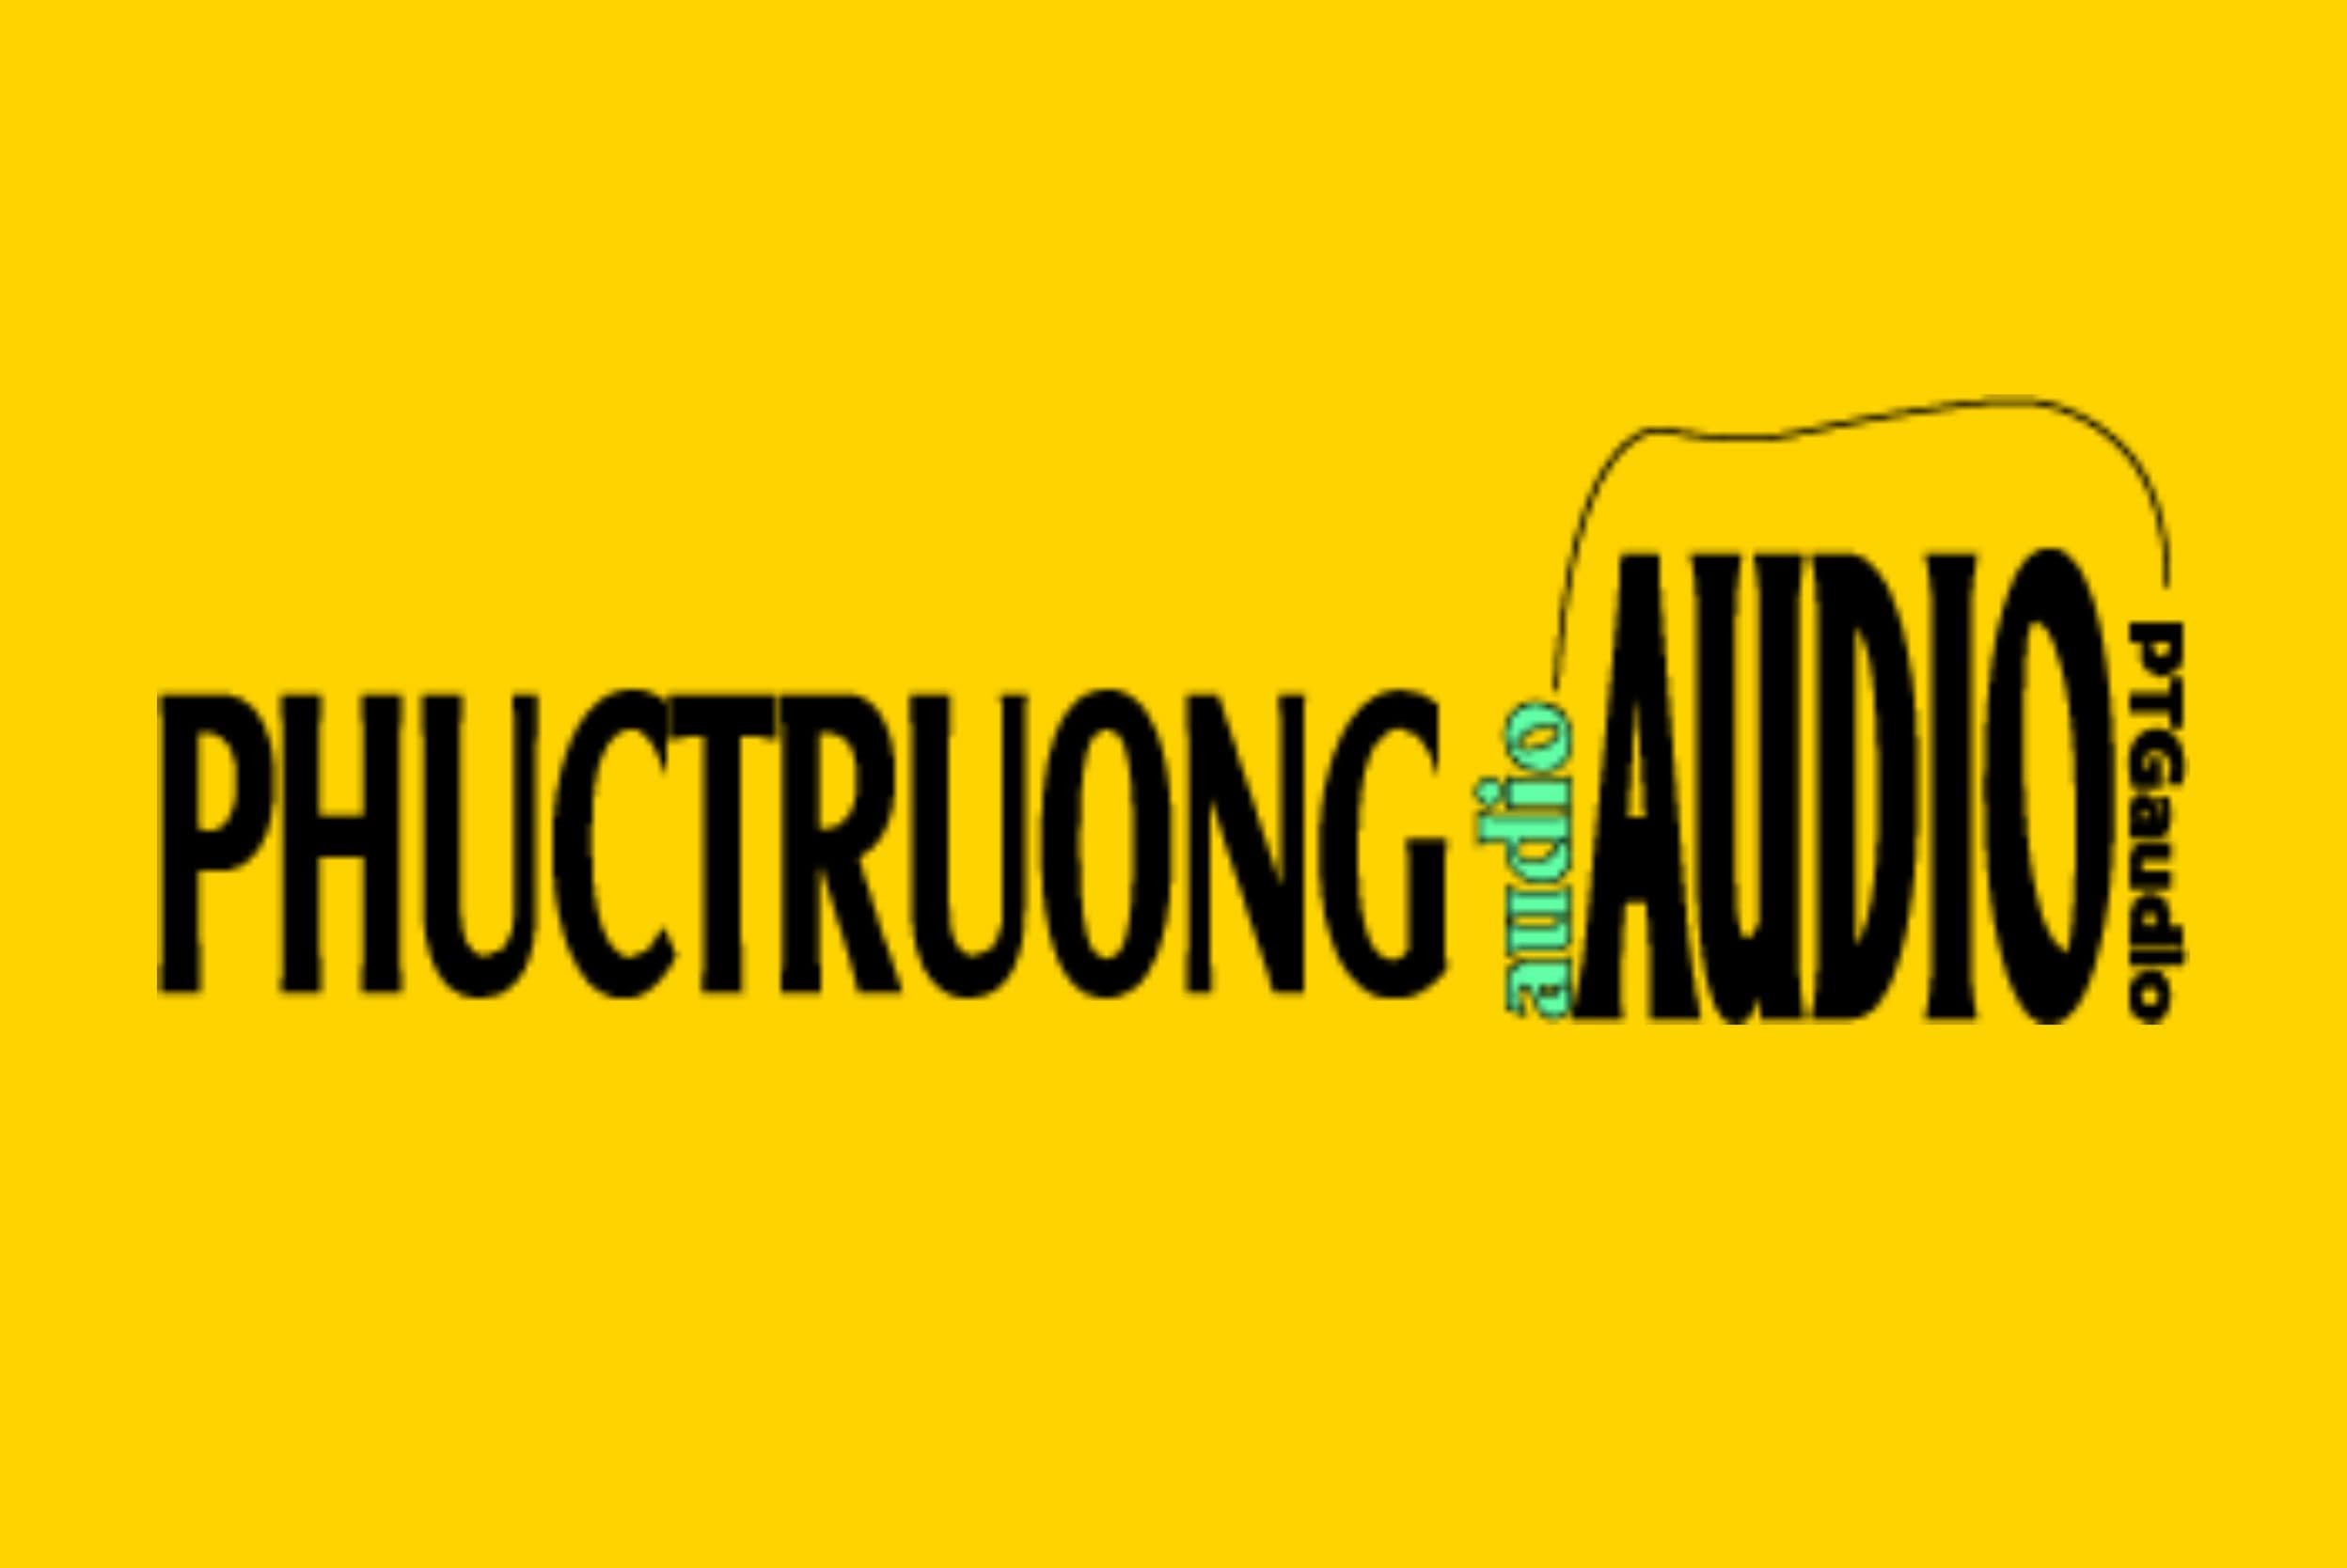 phuc-truong-audio-logo